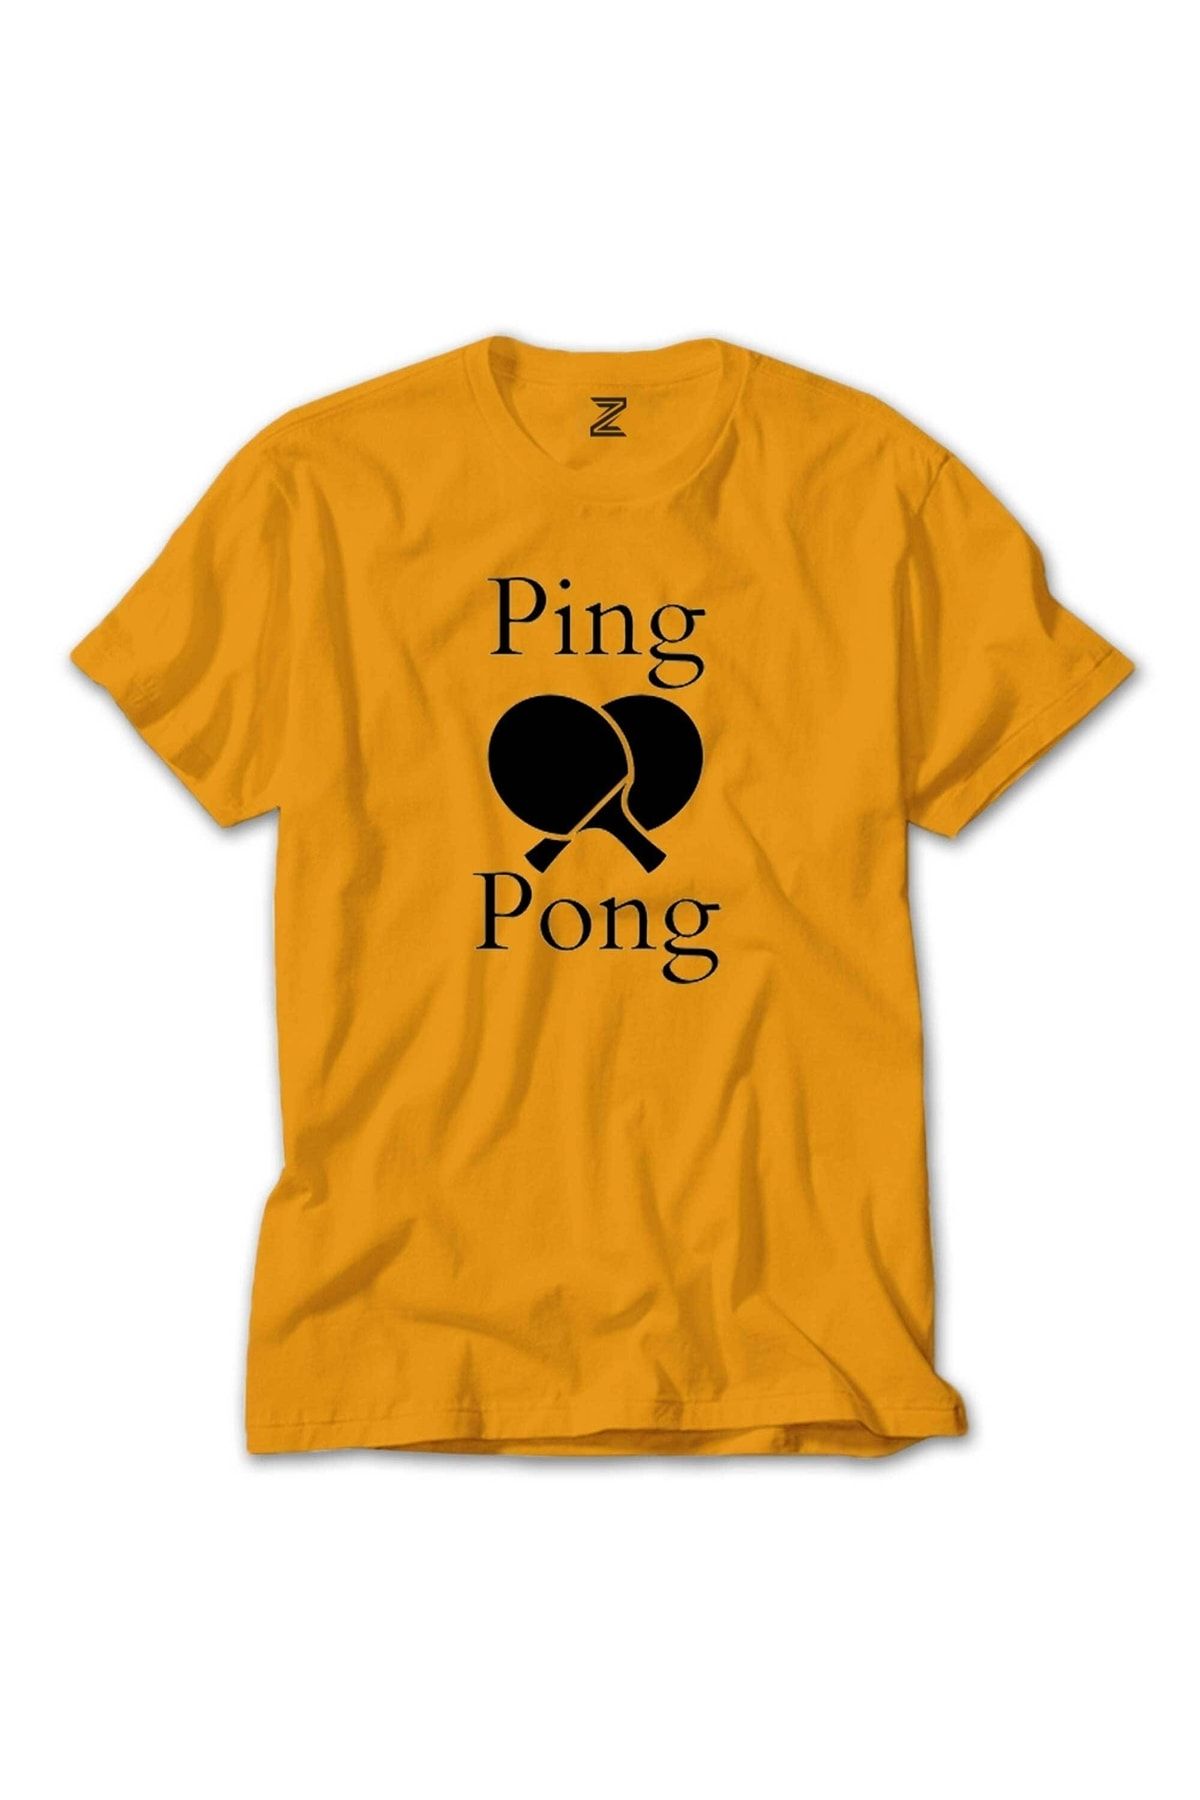 Z zepplin Ping Pong Racket Design Black Sarı Tişört